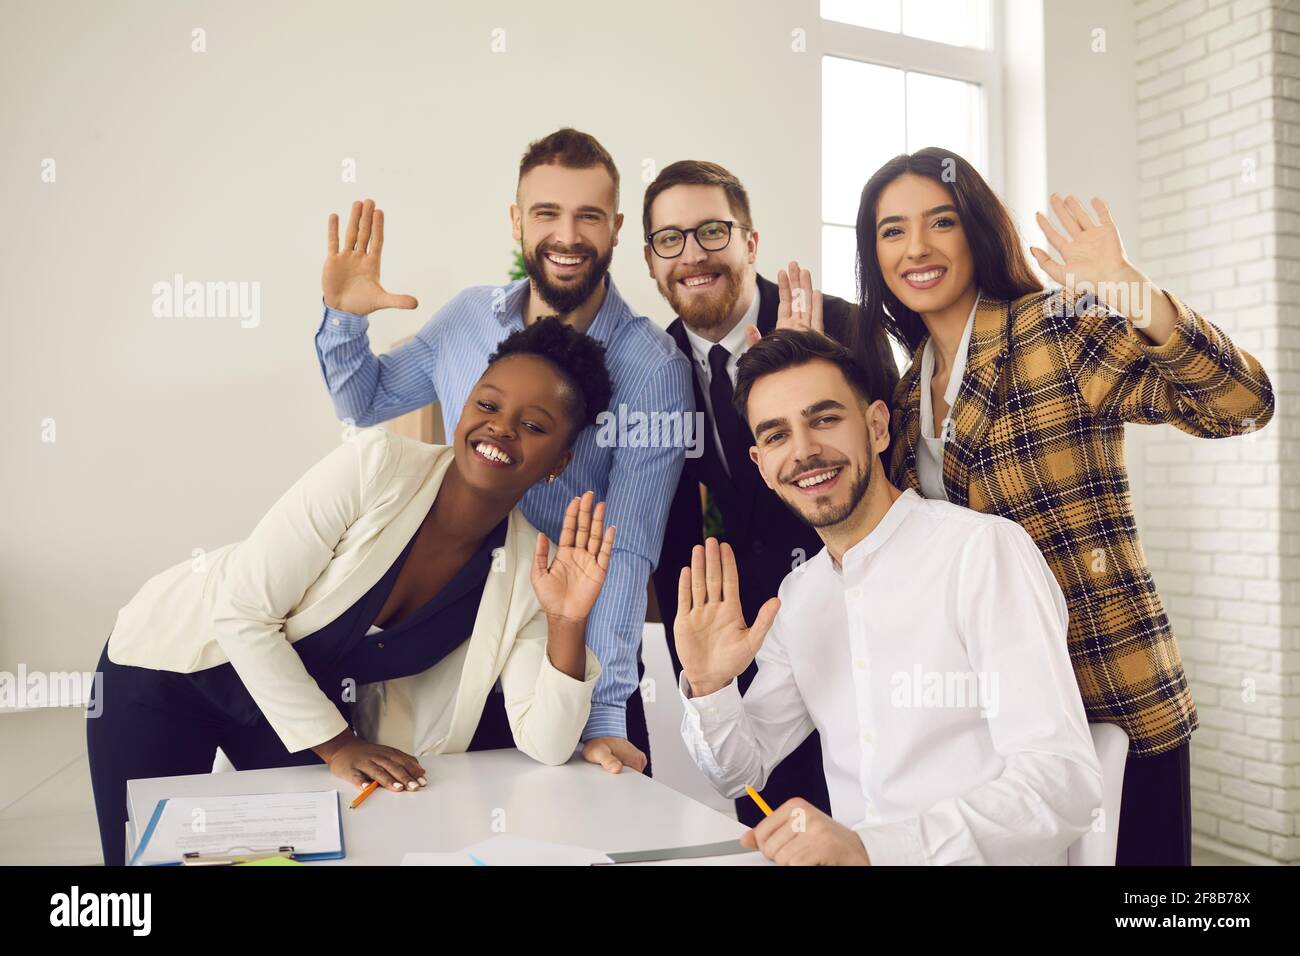 Gruppenportrait von glücklichen jungen Geschäftsleuten, die mit den Händen zuwinken Kamera und Lächeln Stockfoto